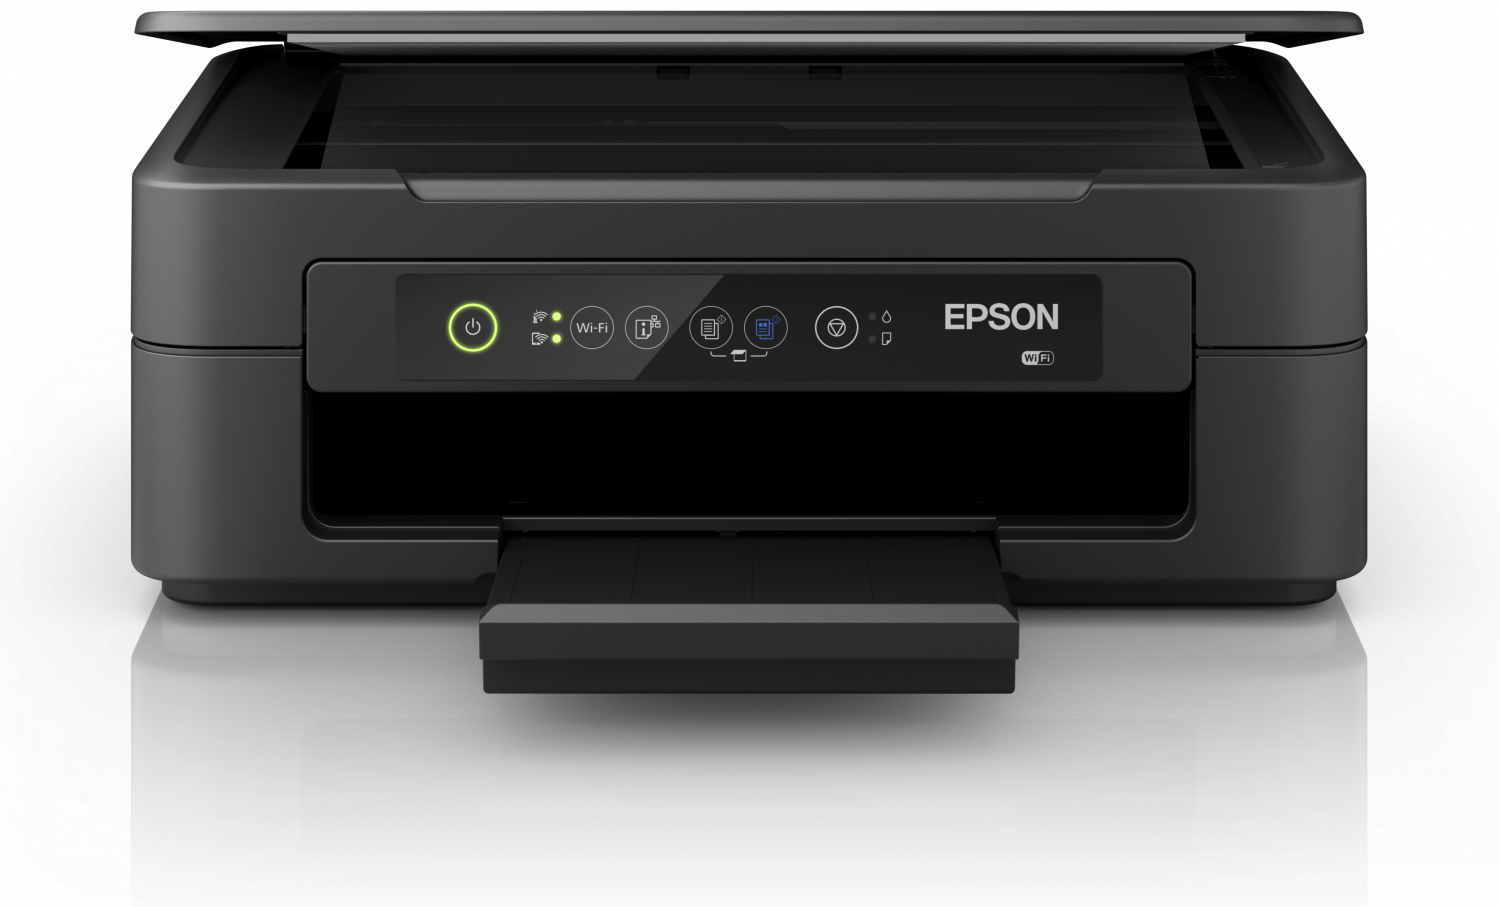 Stampante multifunzione Epson Expression Home XP-2100 economica in offerta: da Unieuro al prezzo di 59 euro! (- 14%)